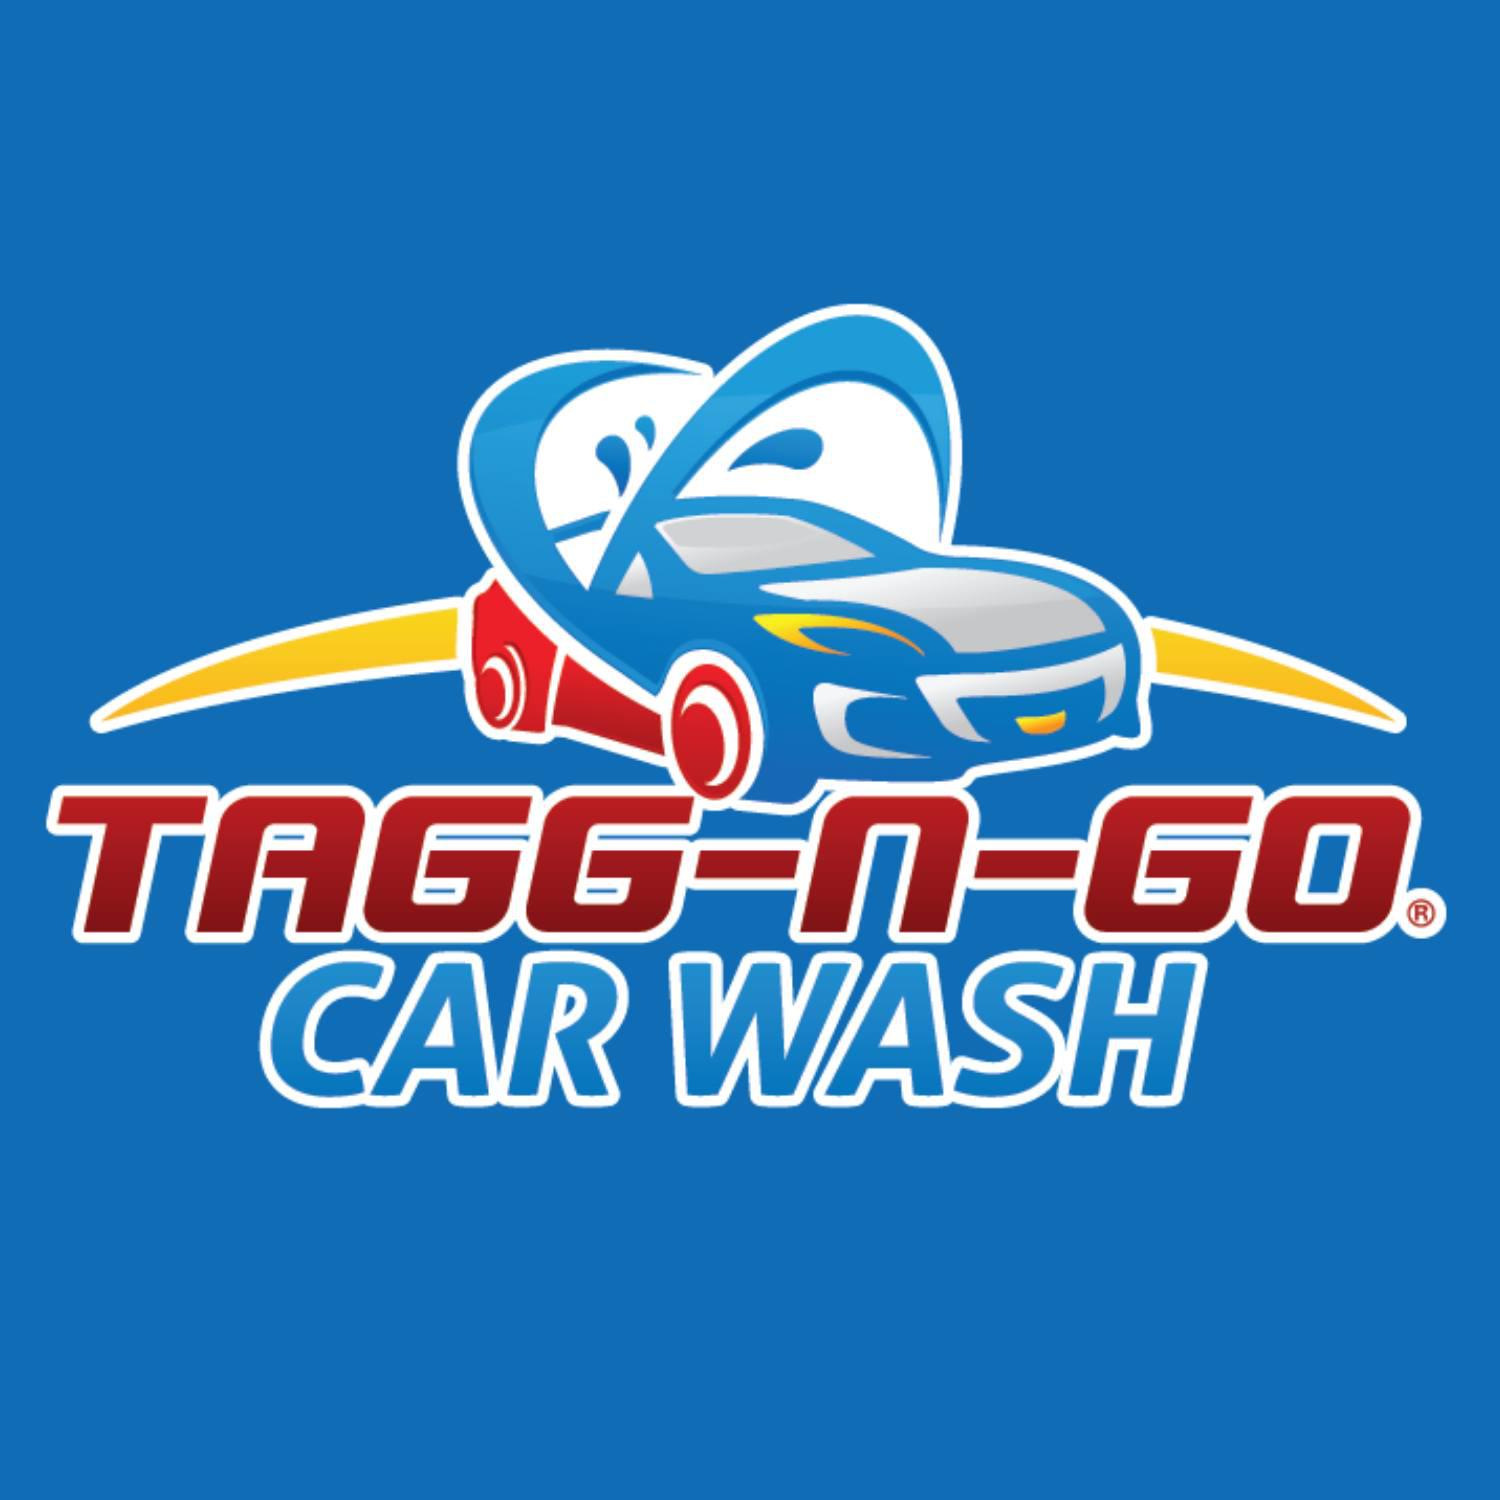 Tagg-N-Go Car Wash - Ephraim, UT 84627 - (435)628-2256 | ShowMeLocal.com